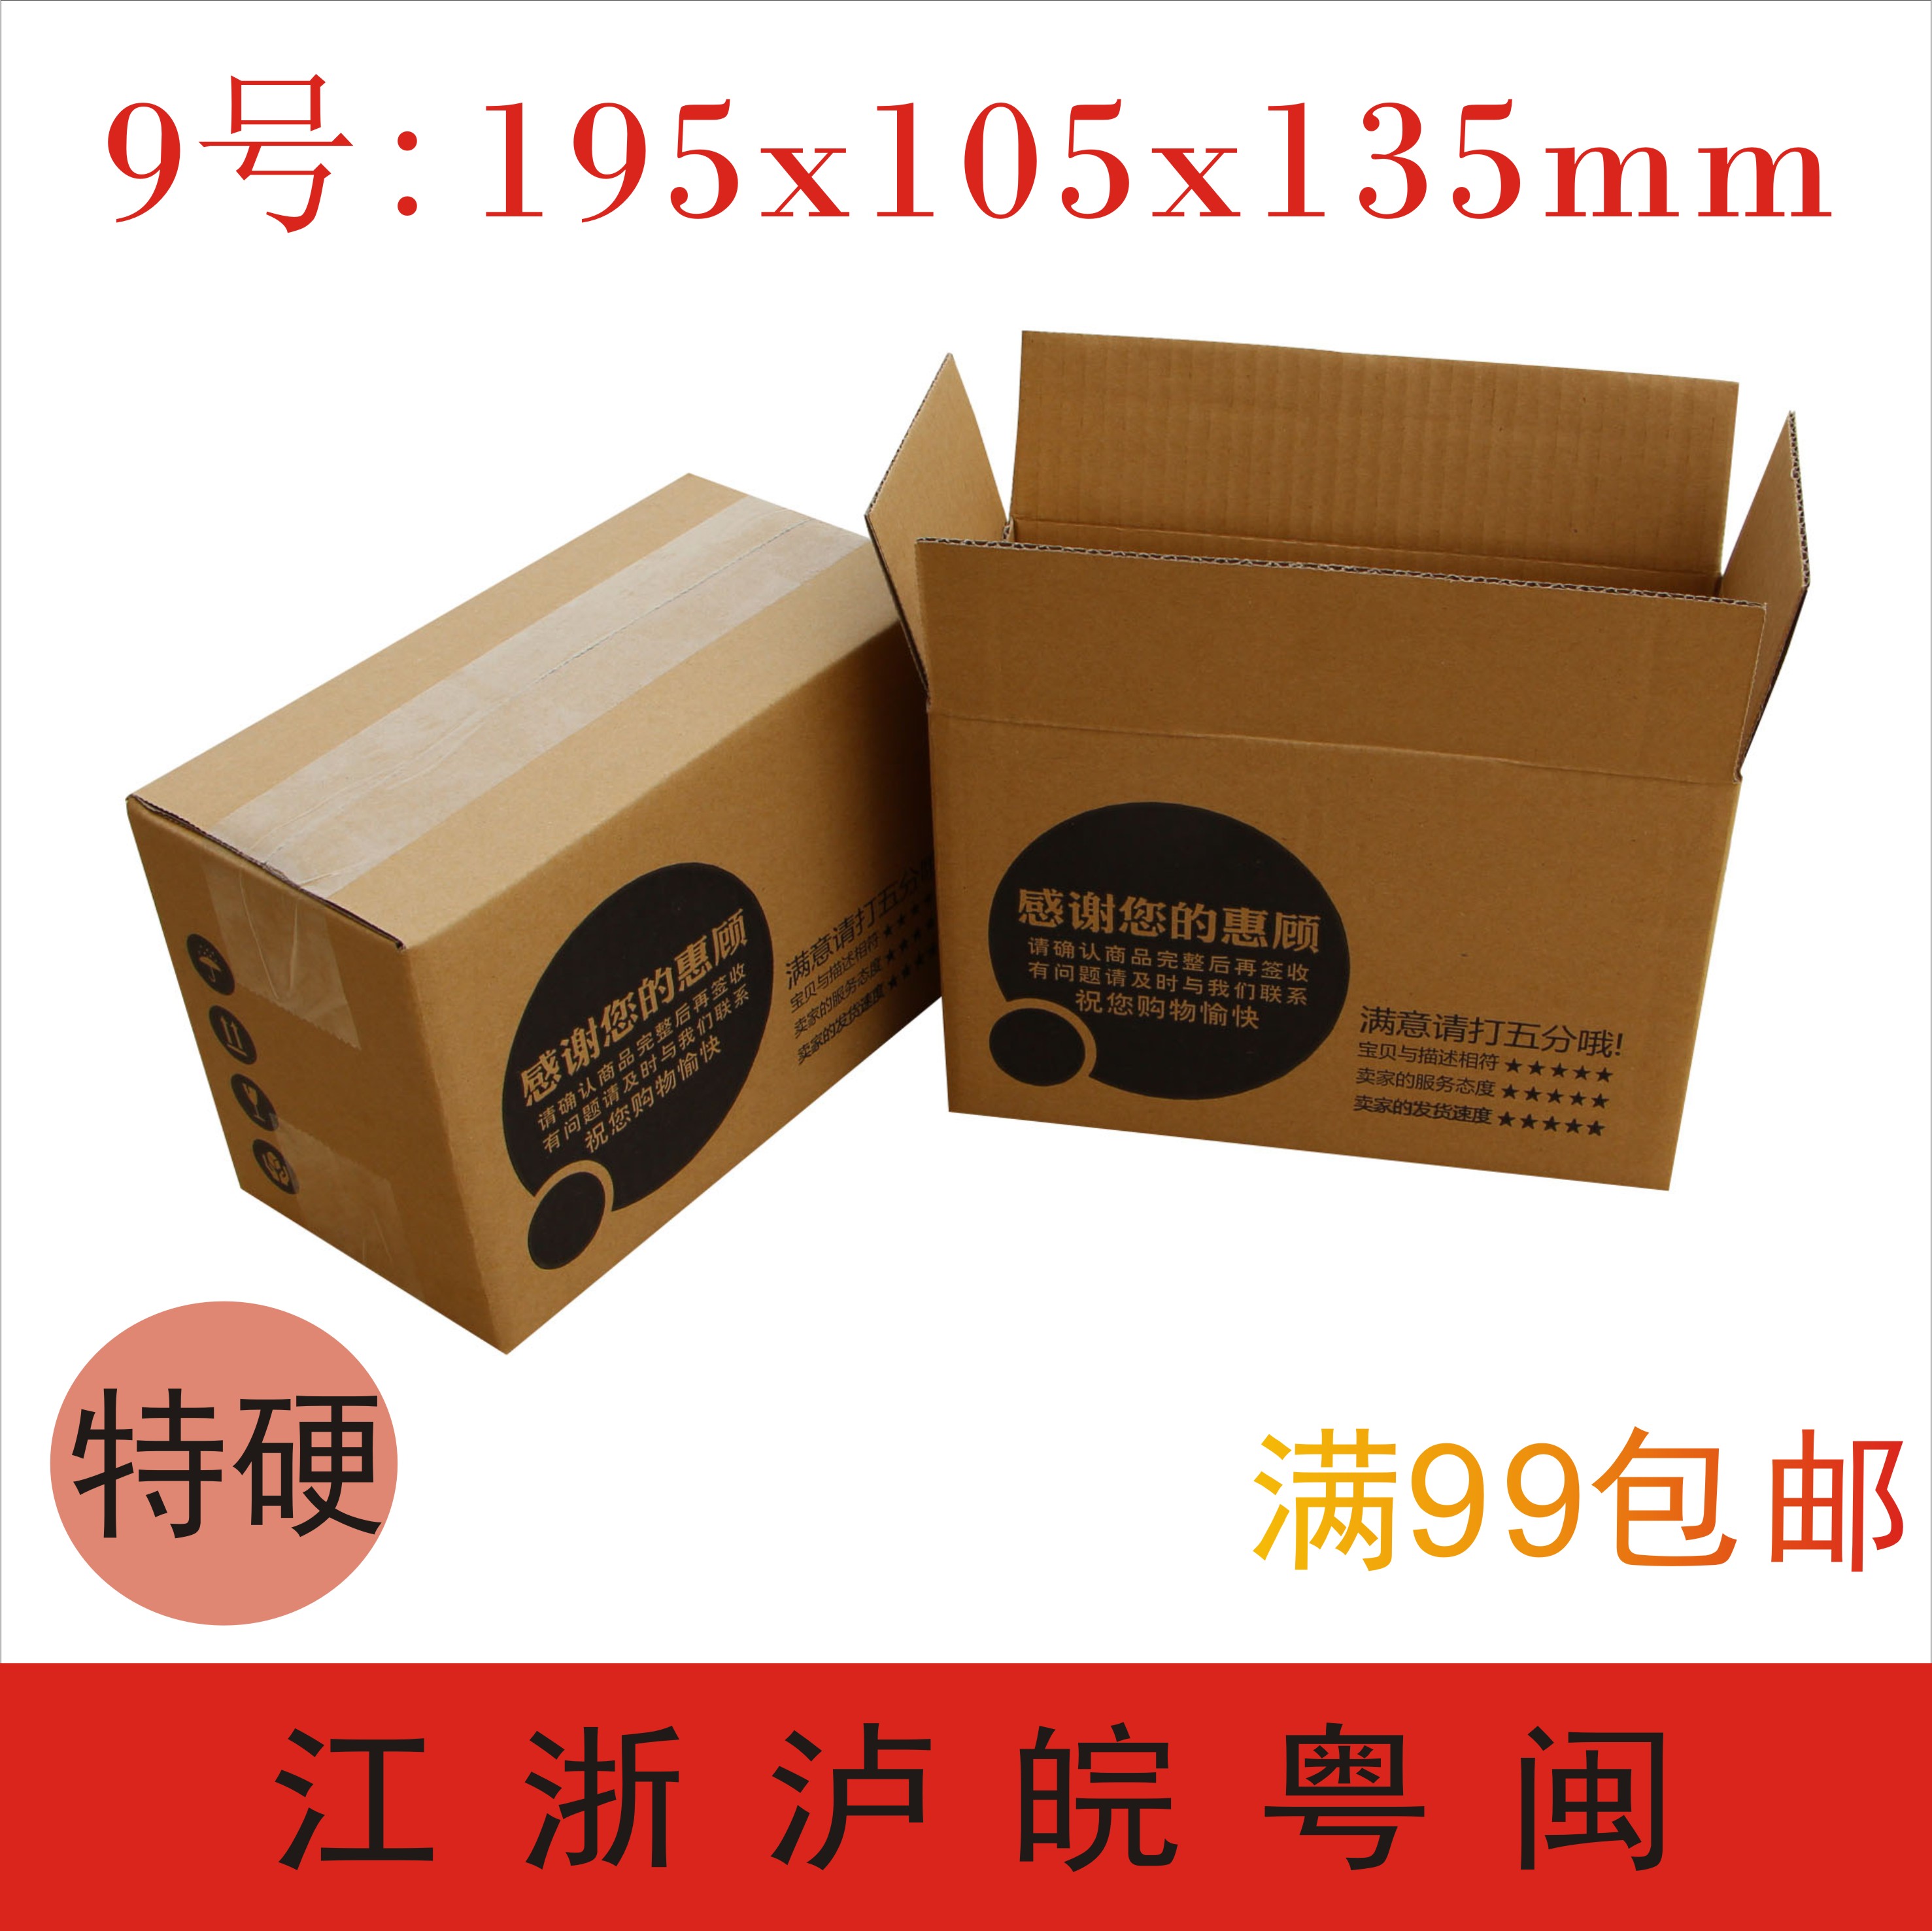 冰箱纸盒箱子包装设计素材_纸盒包装技术_包装正方形纸盒教程